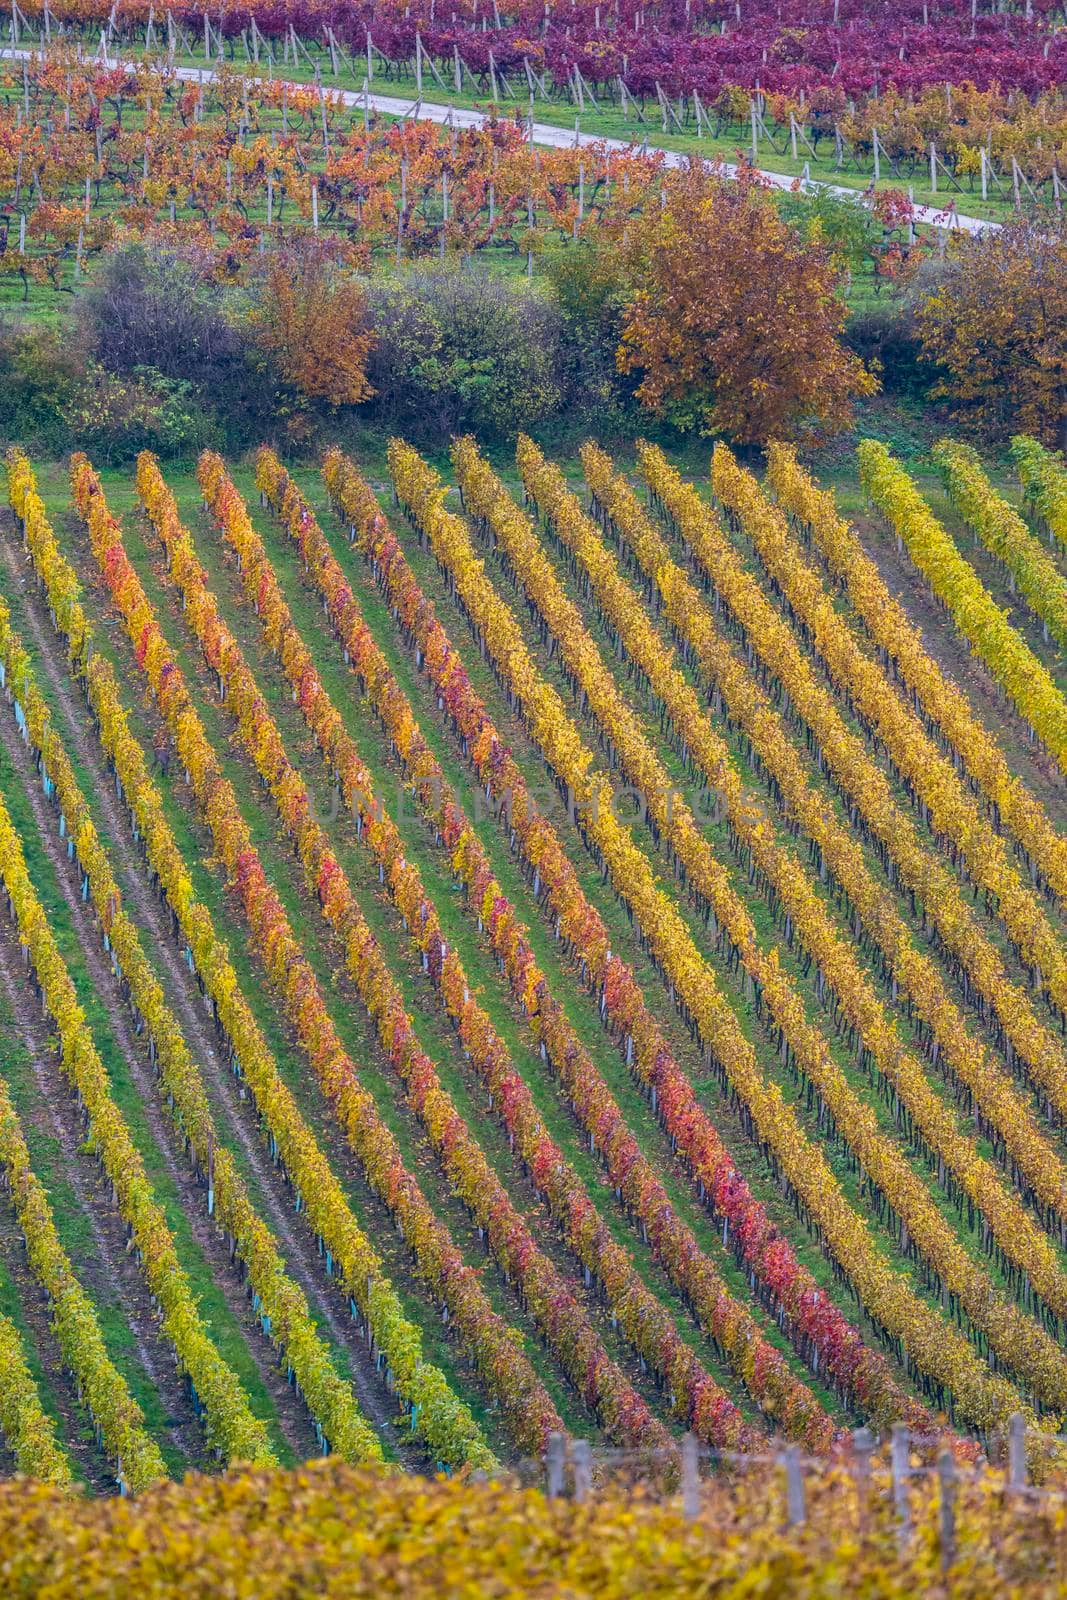 Autumn vineyard near Cejkovice, Southern Moravia, Czech Republic by phbcz